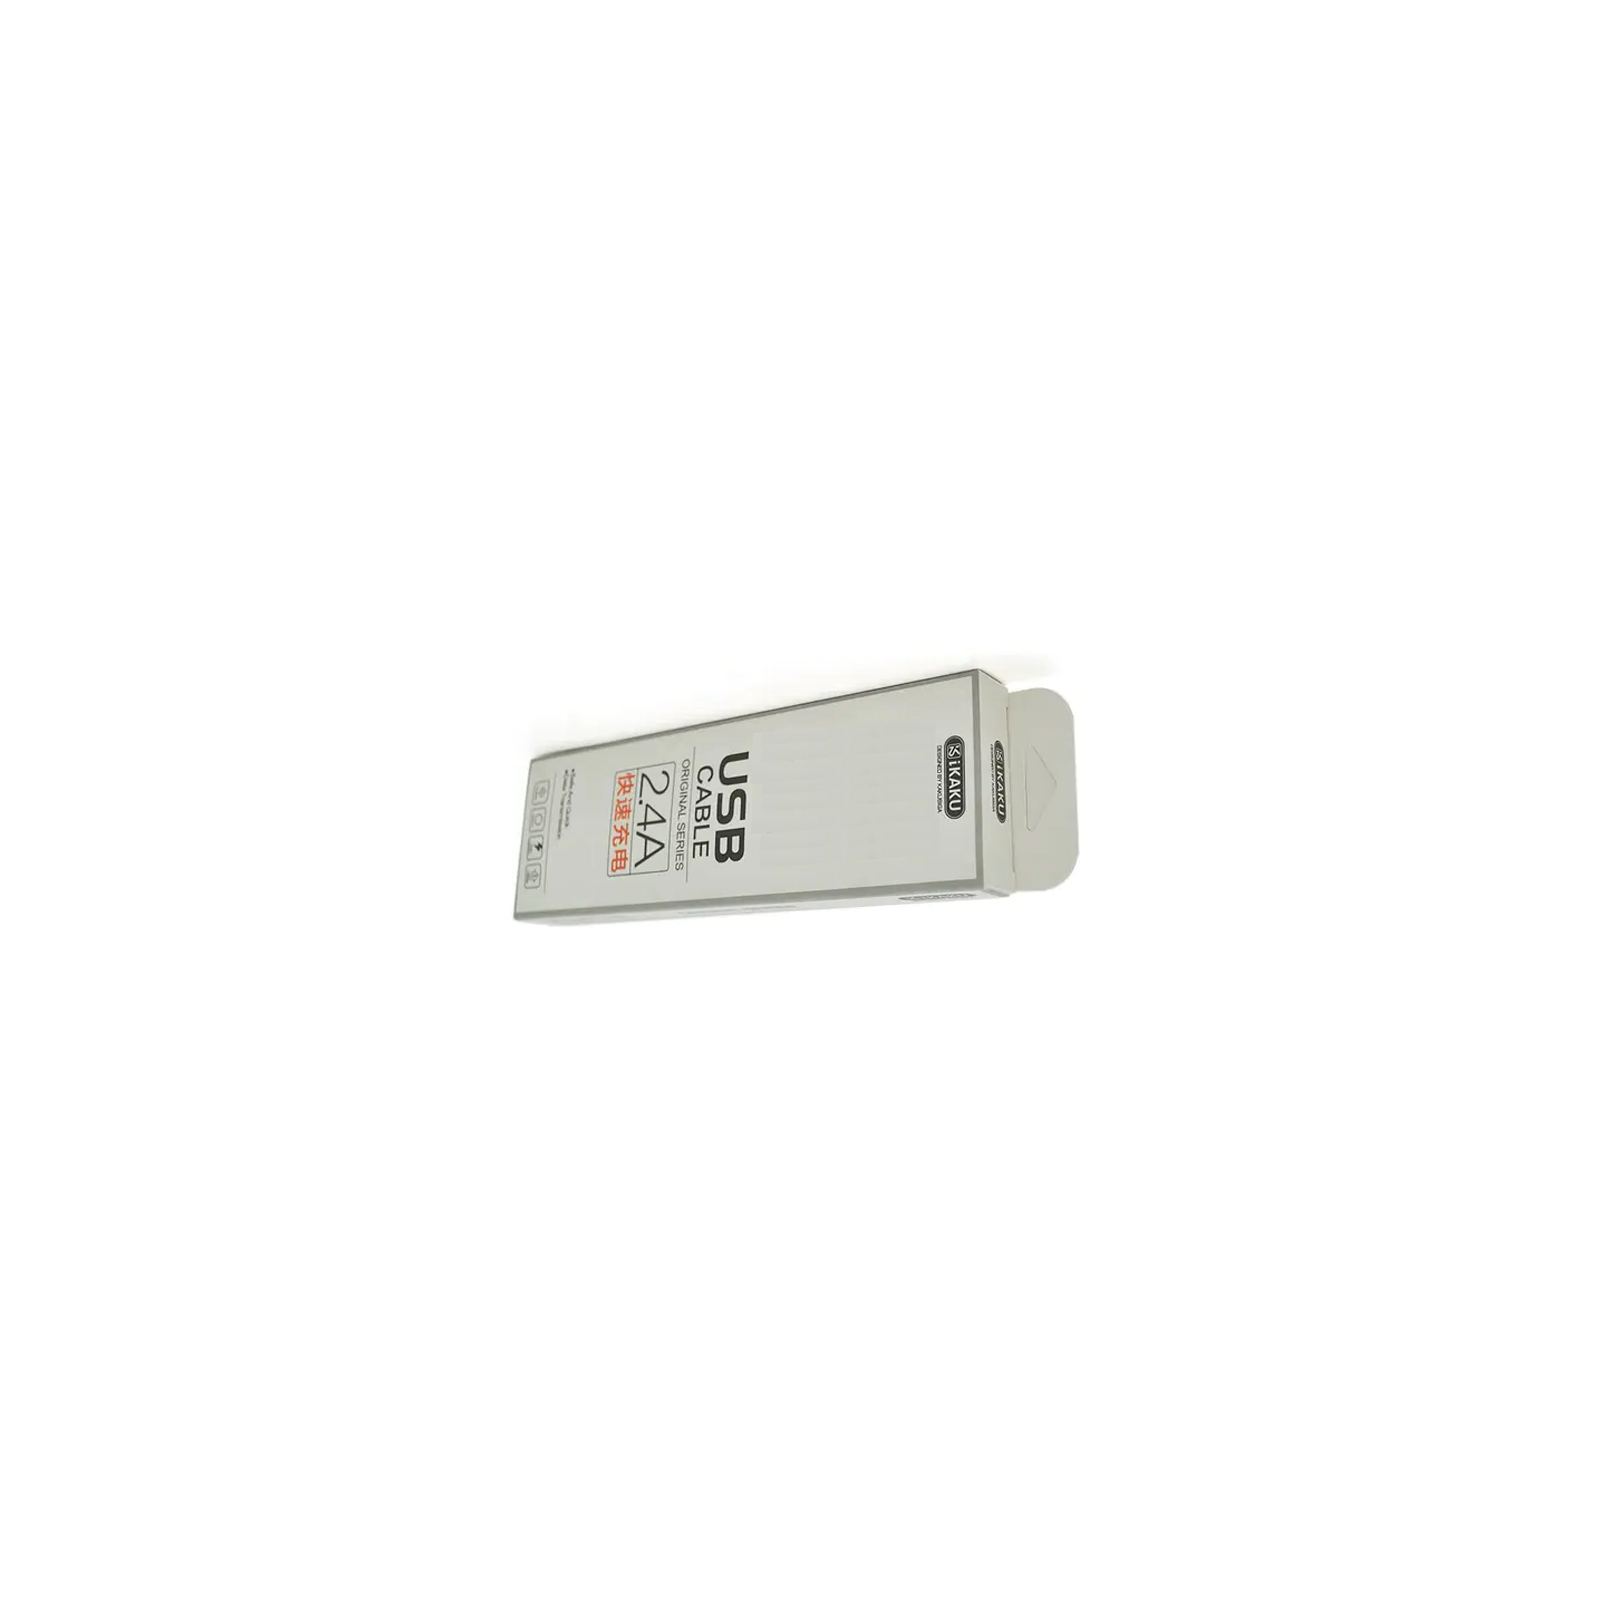 Дата кабель USB 2.0 AM to Type-C 1.0m KSC-060 SUCHANG 2.4A White iKAKU (KSC-060-TC)